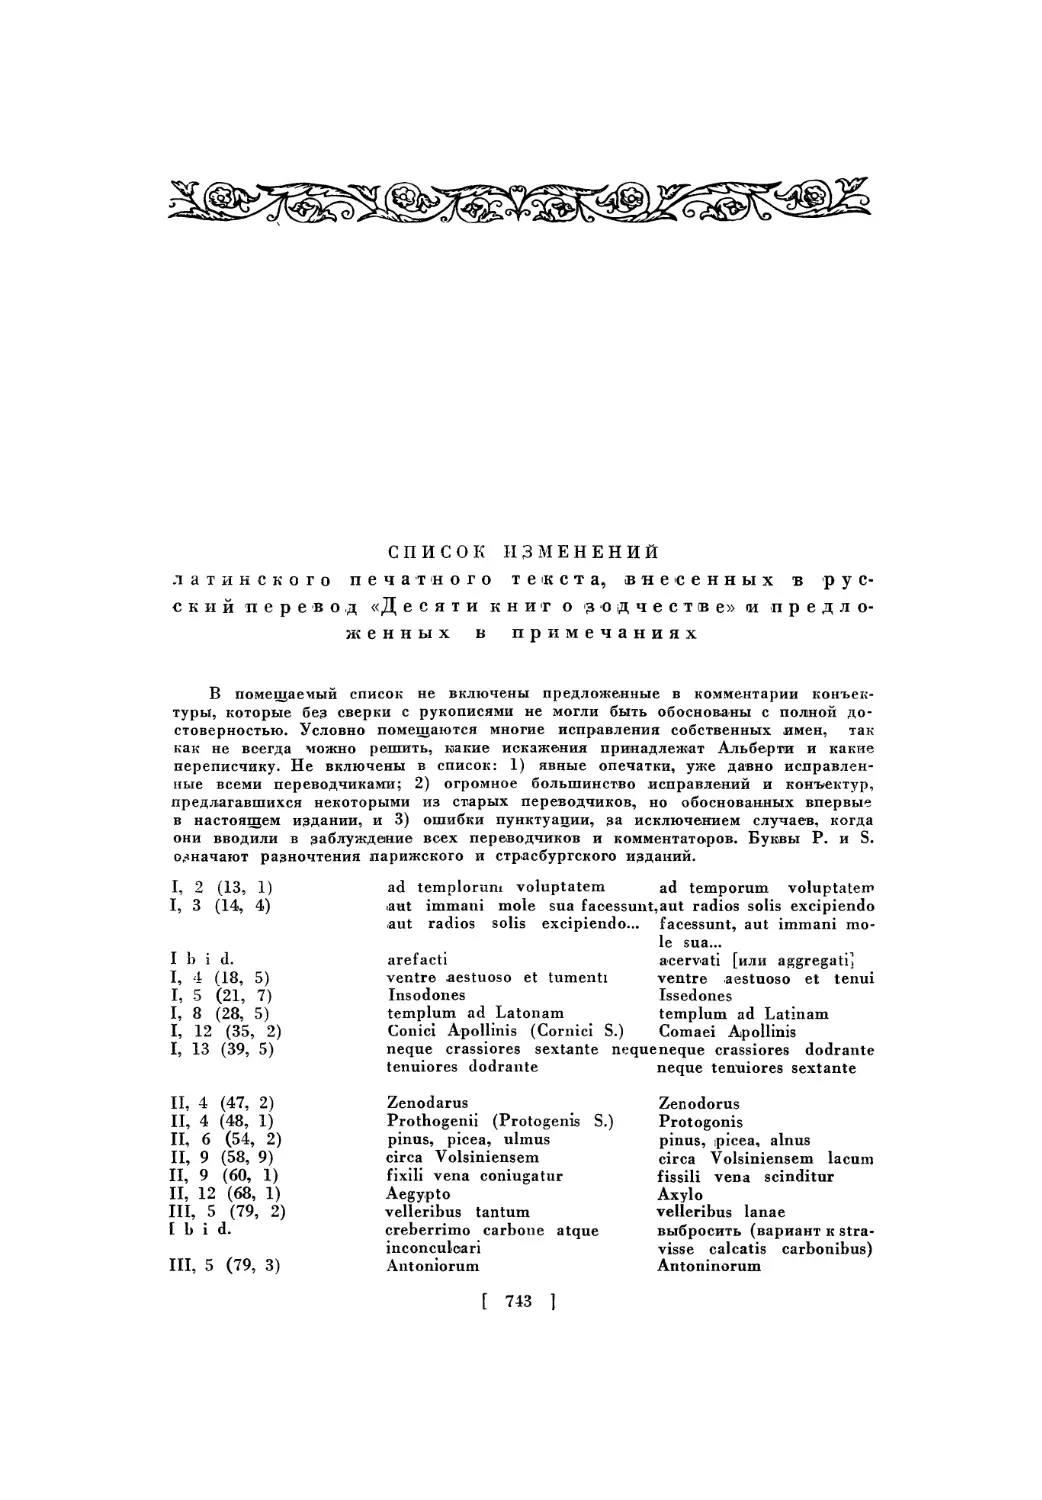 Список изменений латинского печатного текста, принятых в русском переводе «Десяти книг о зодчестве» и предложенных в примечаниях